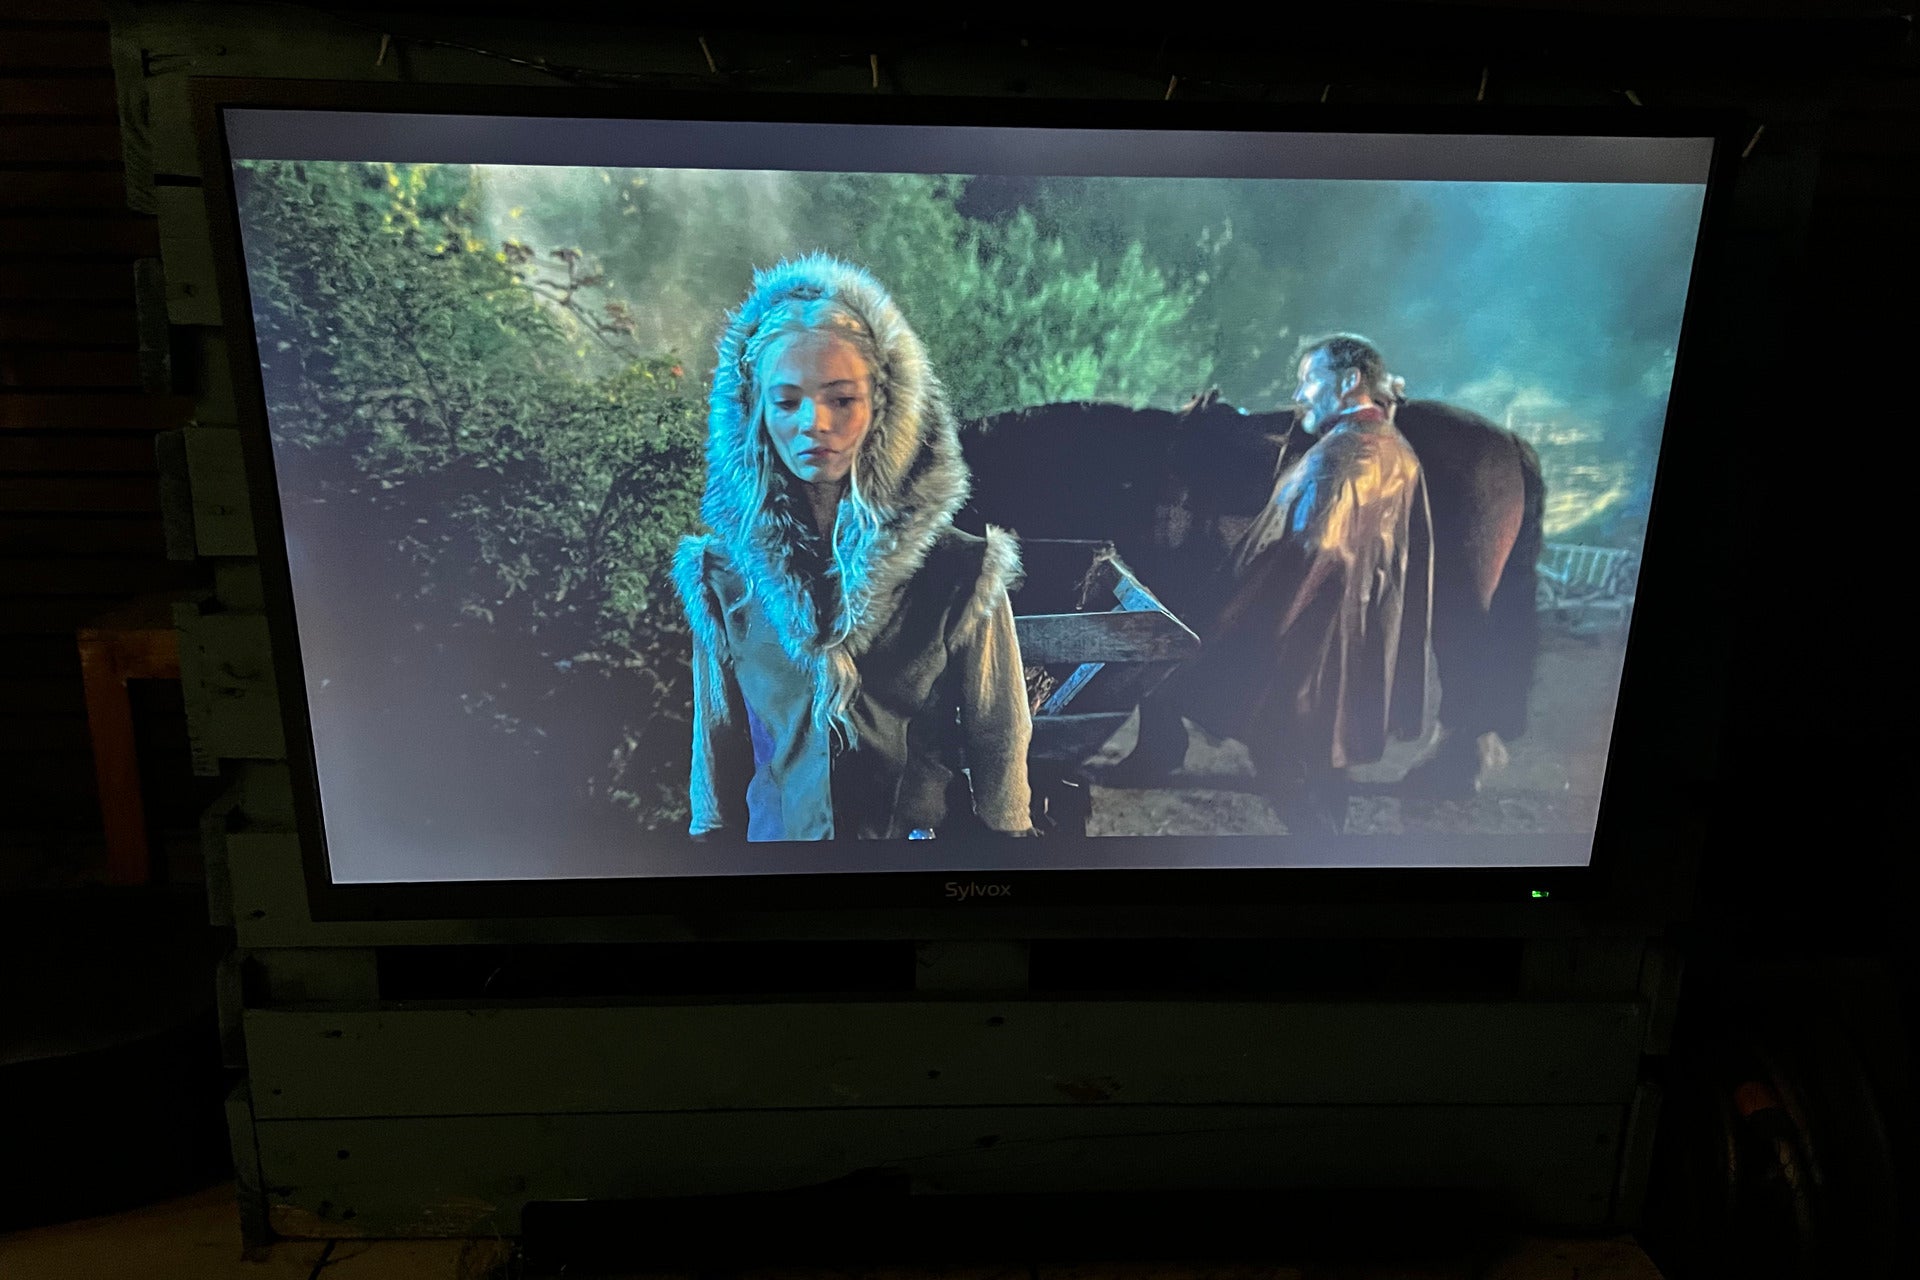 Sylvox Deck Pro Outdoor TV de 43 pulgadas The Witcher durante la noche